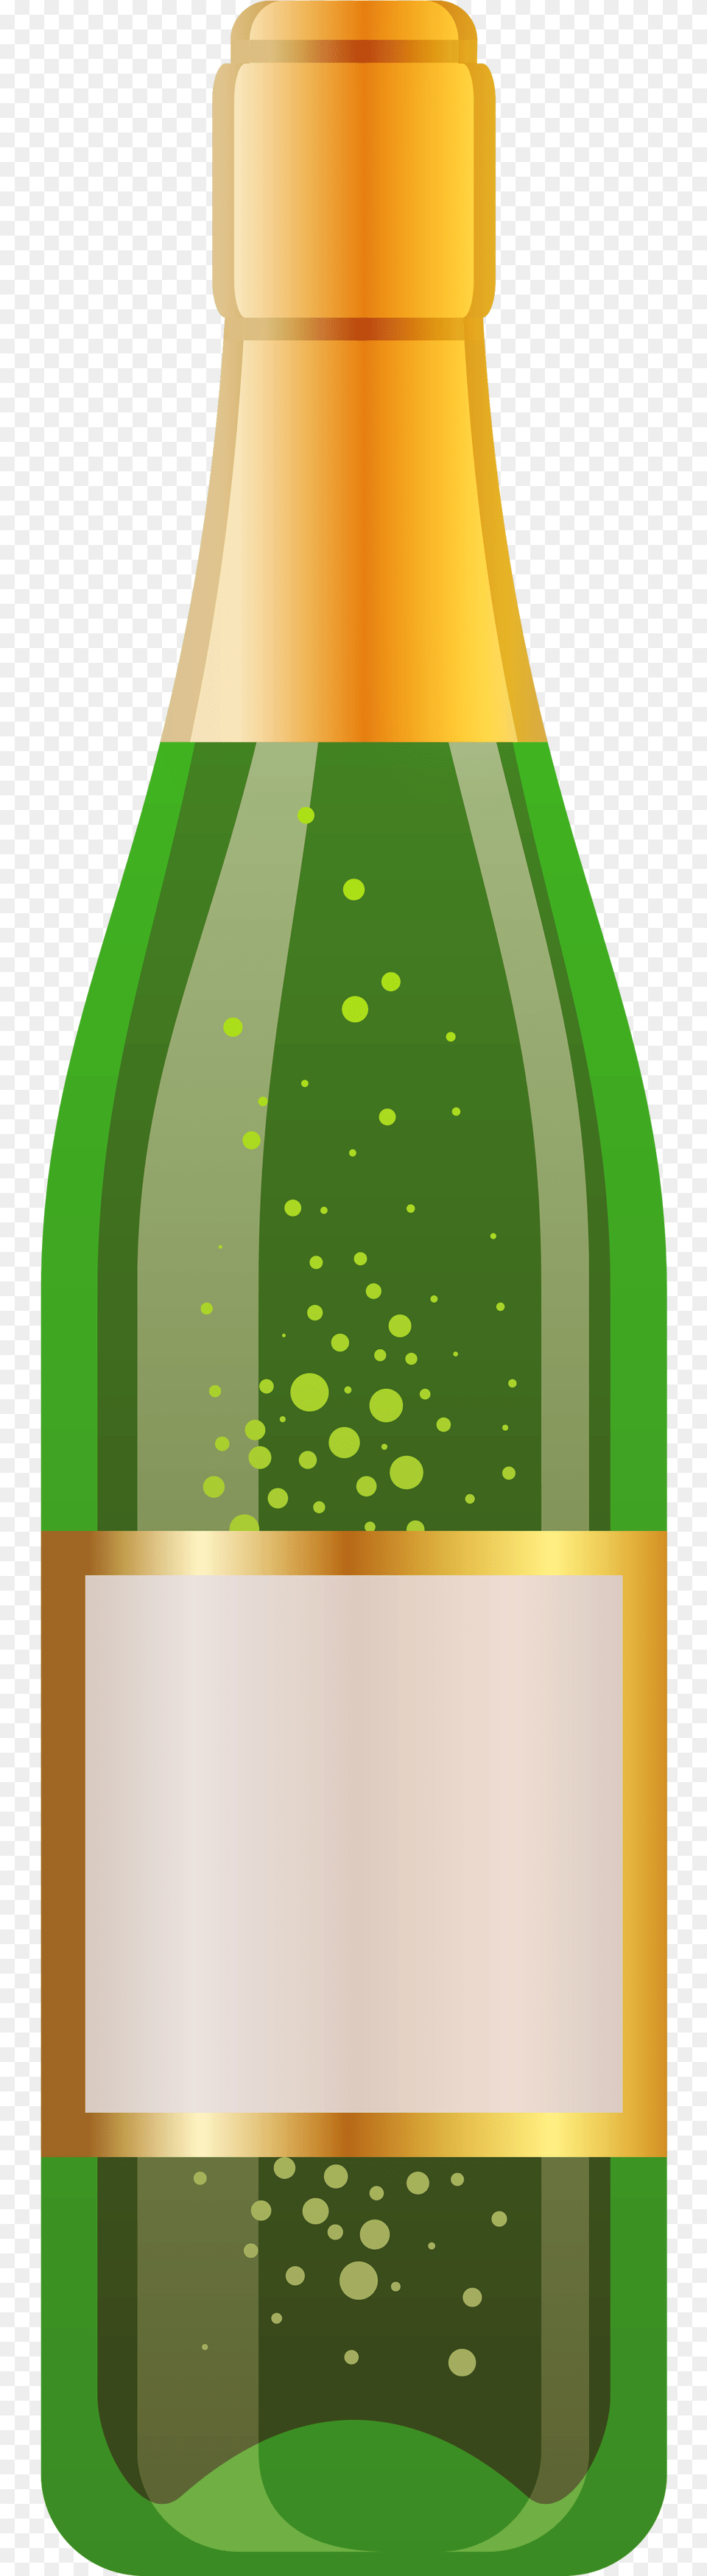 Wine, Bottle, Alcohol, Beer, Beverage Png